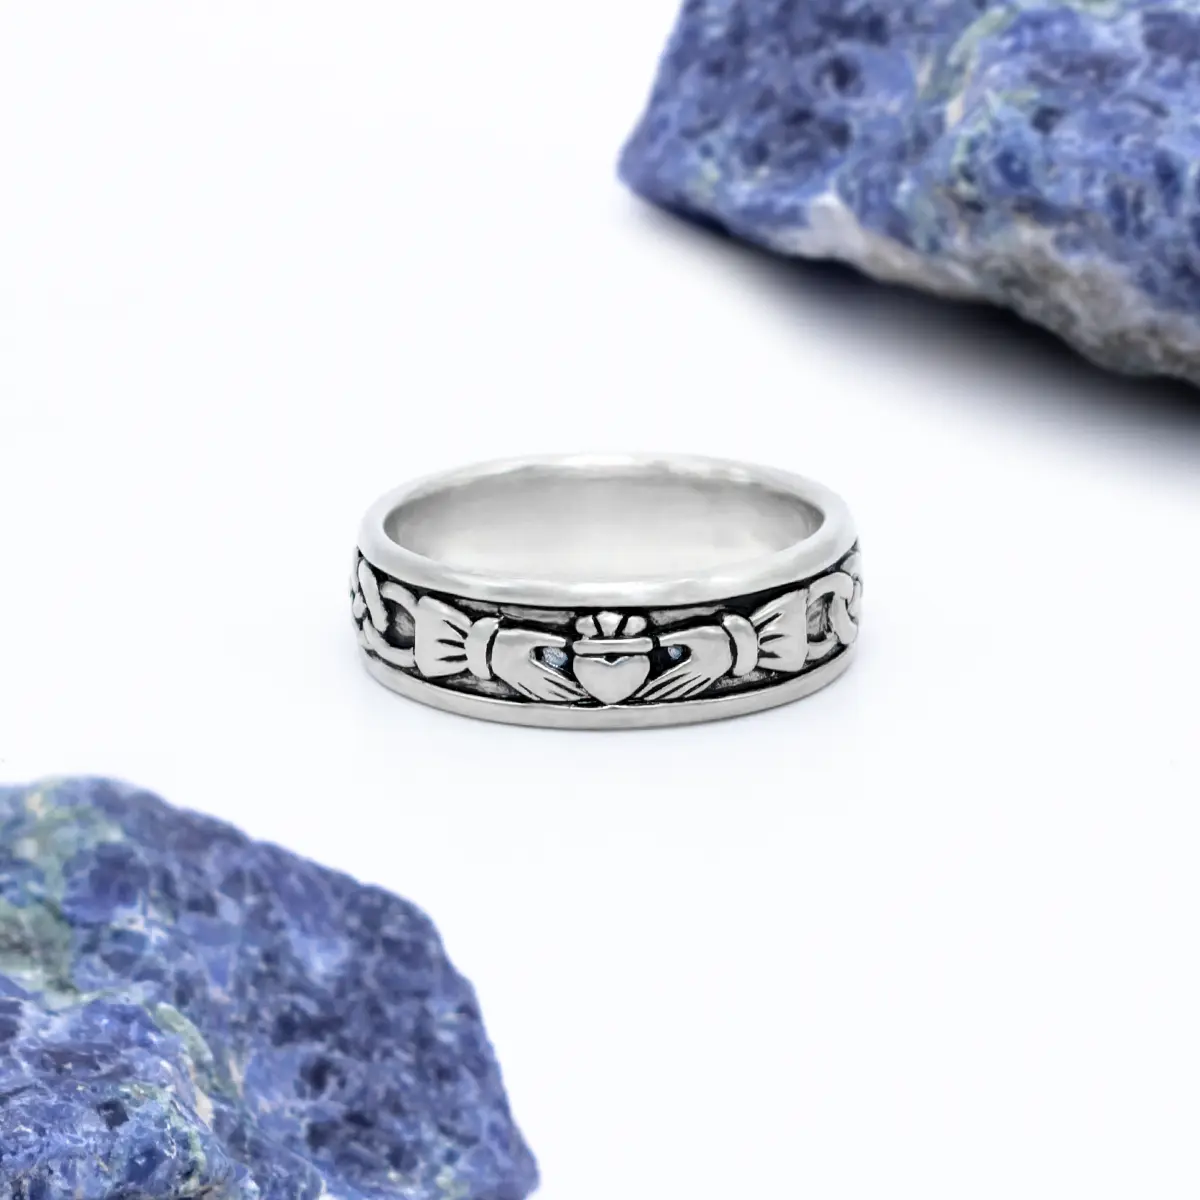 Oxidized Silver Ladies Claddagh Ring...